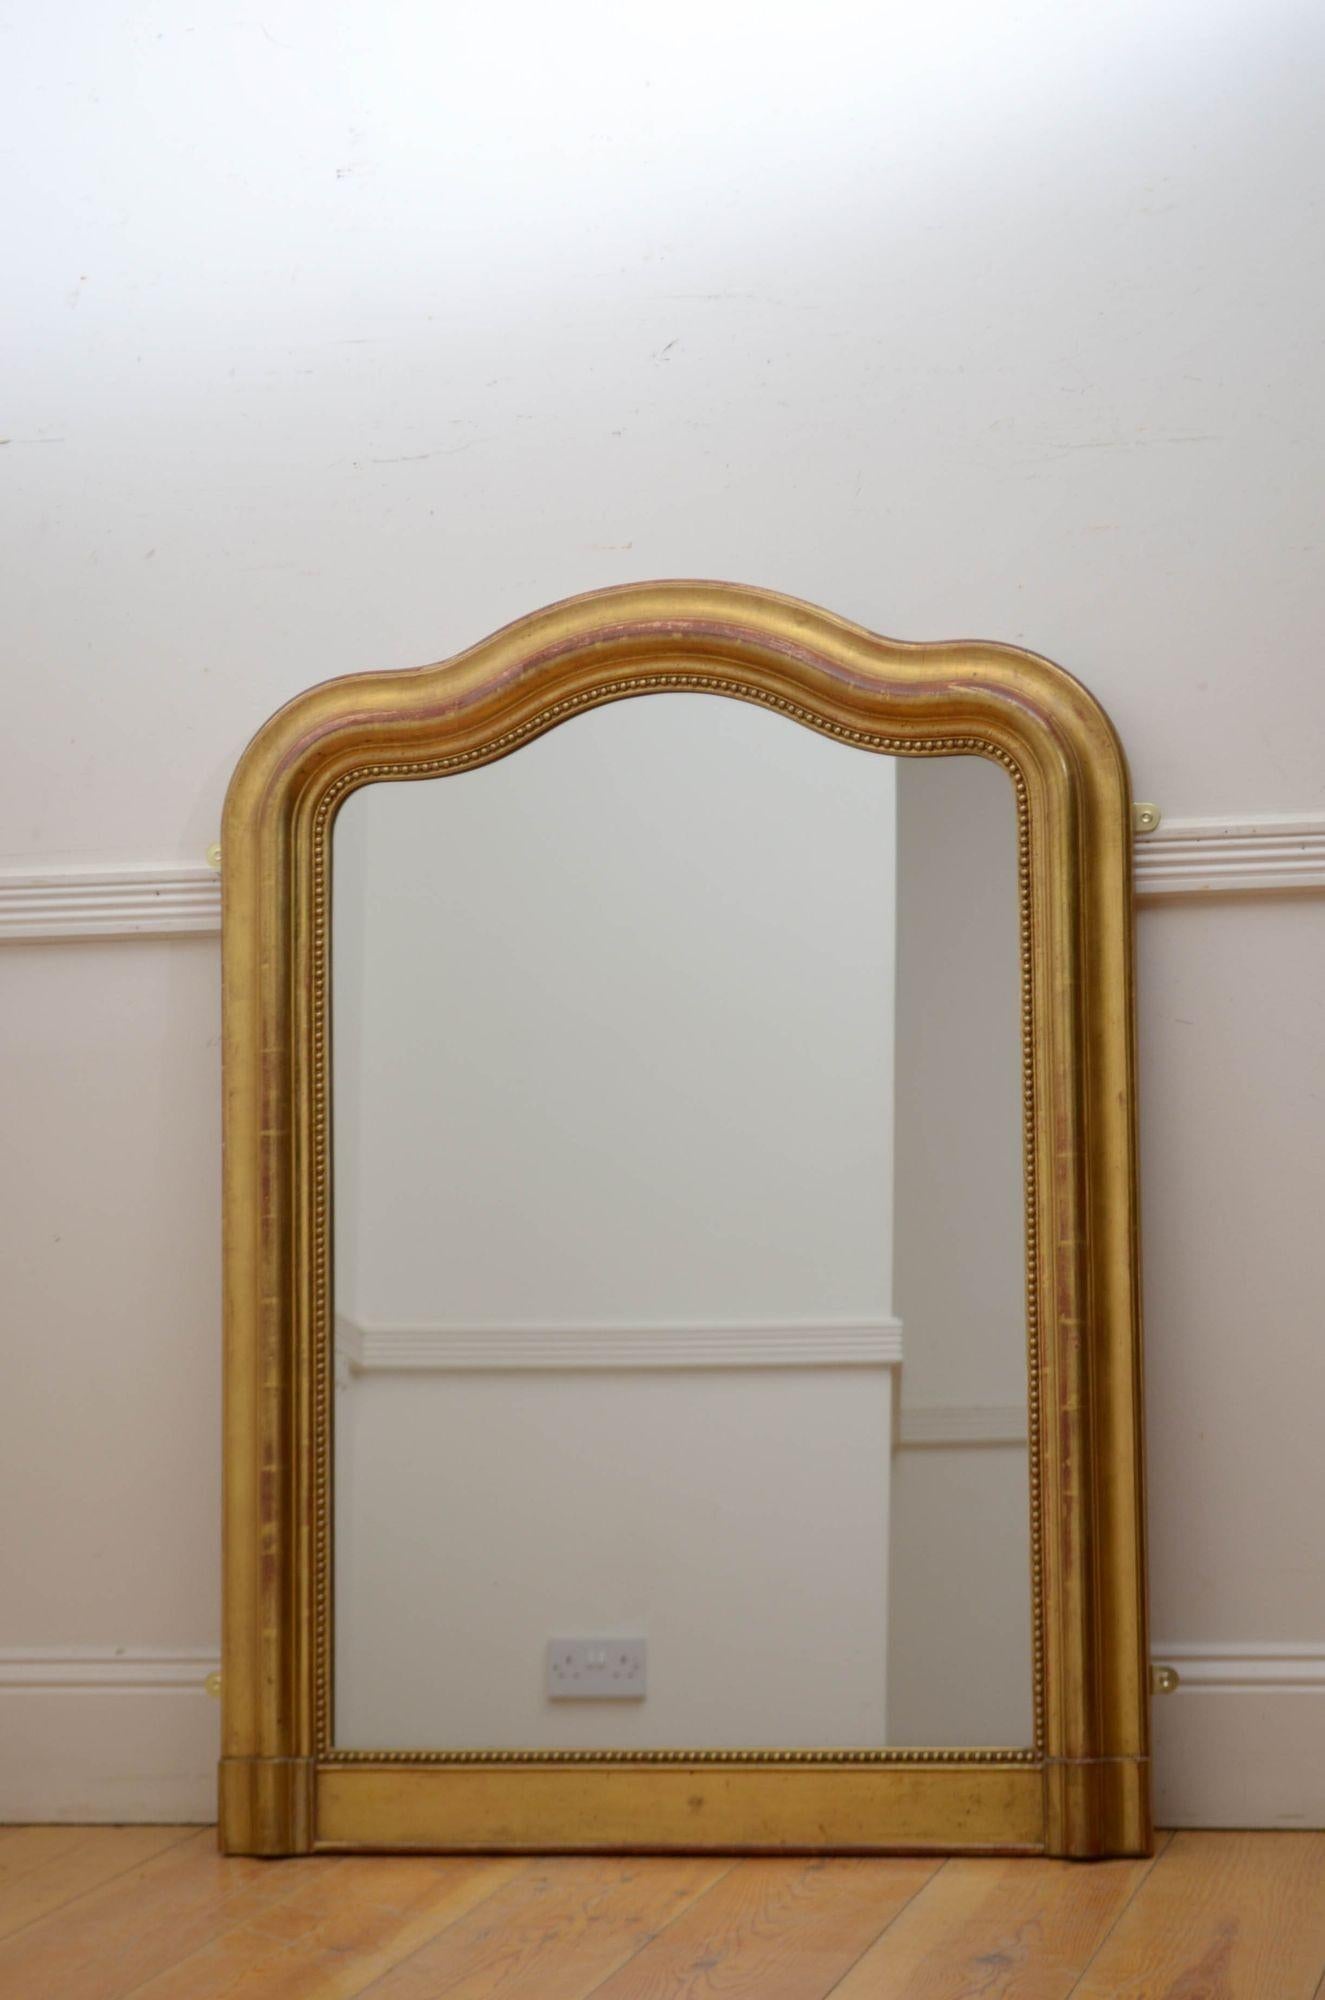 Sn5541 Französischer vergoldeter Pfeilerspiegel aus dem XIX. Jahrhundert mit Originalglas, das etwas stockfleckig ist und funkelt, in einem perlenbesetzten, profilierten und vergoldeten Rahmen mit schlangenförmiger Oberseite. Dieser antike Spiegel